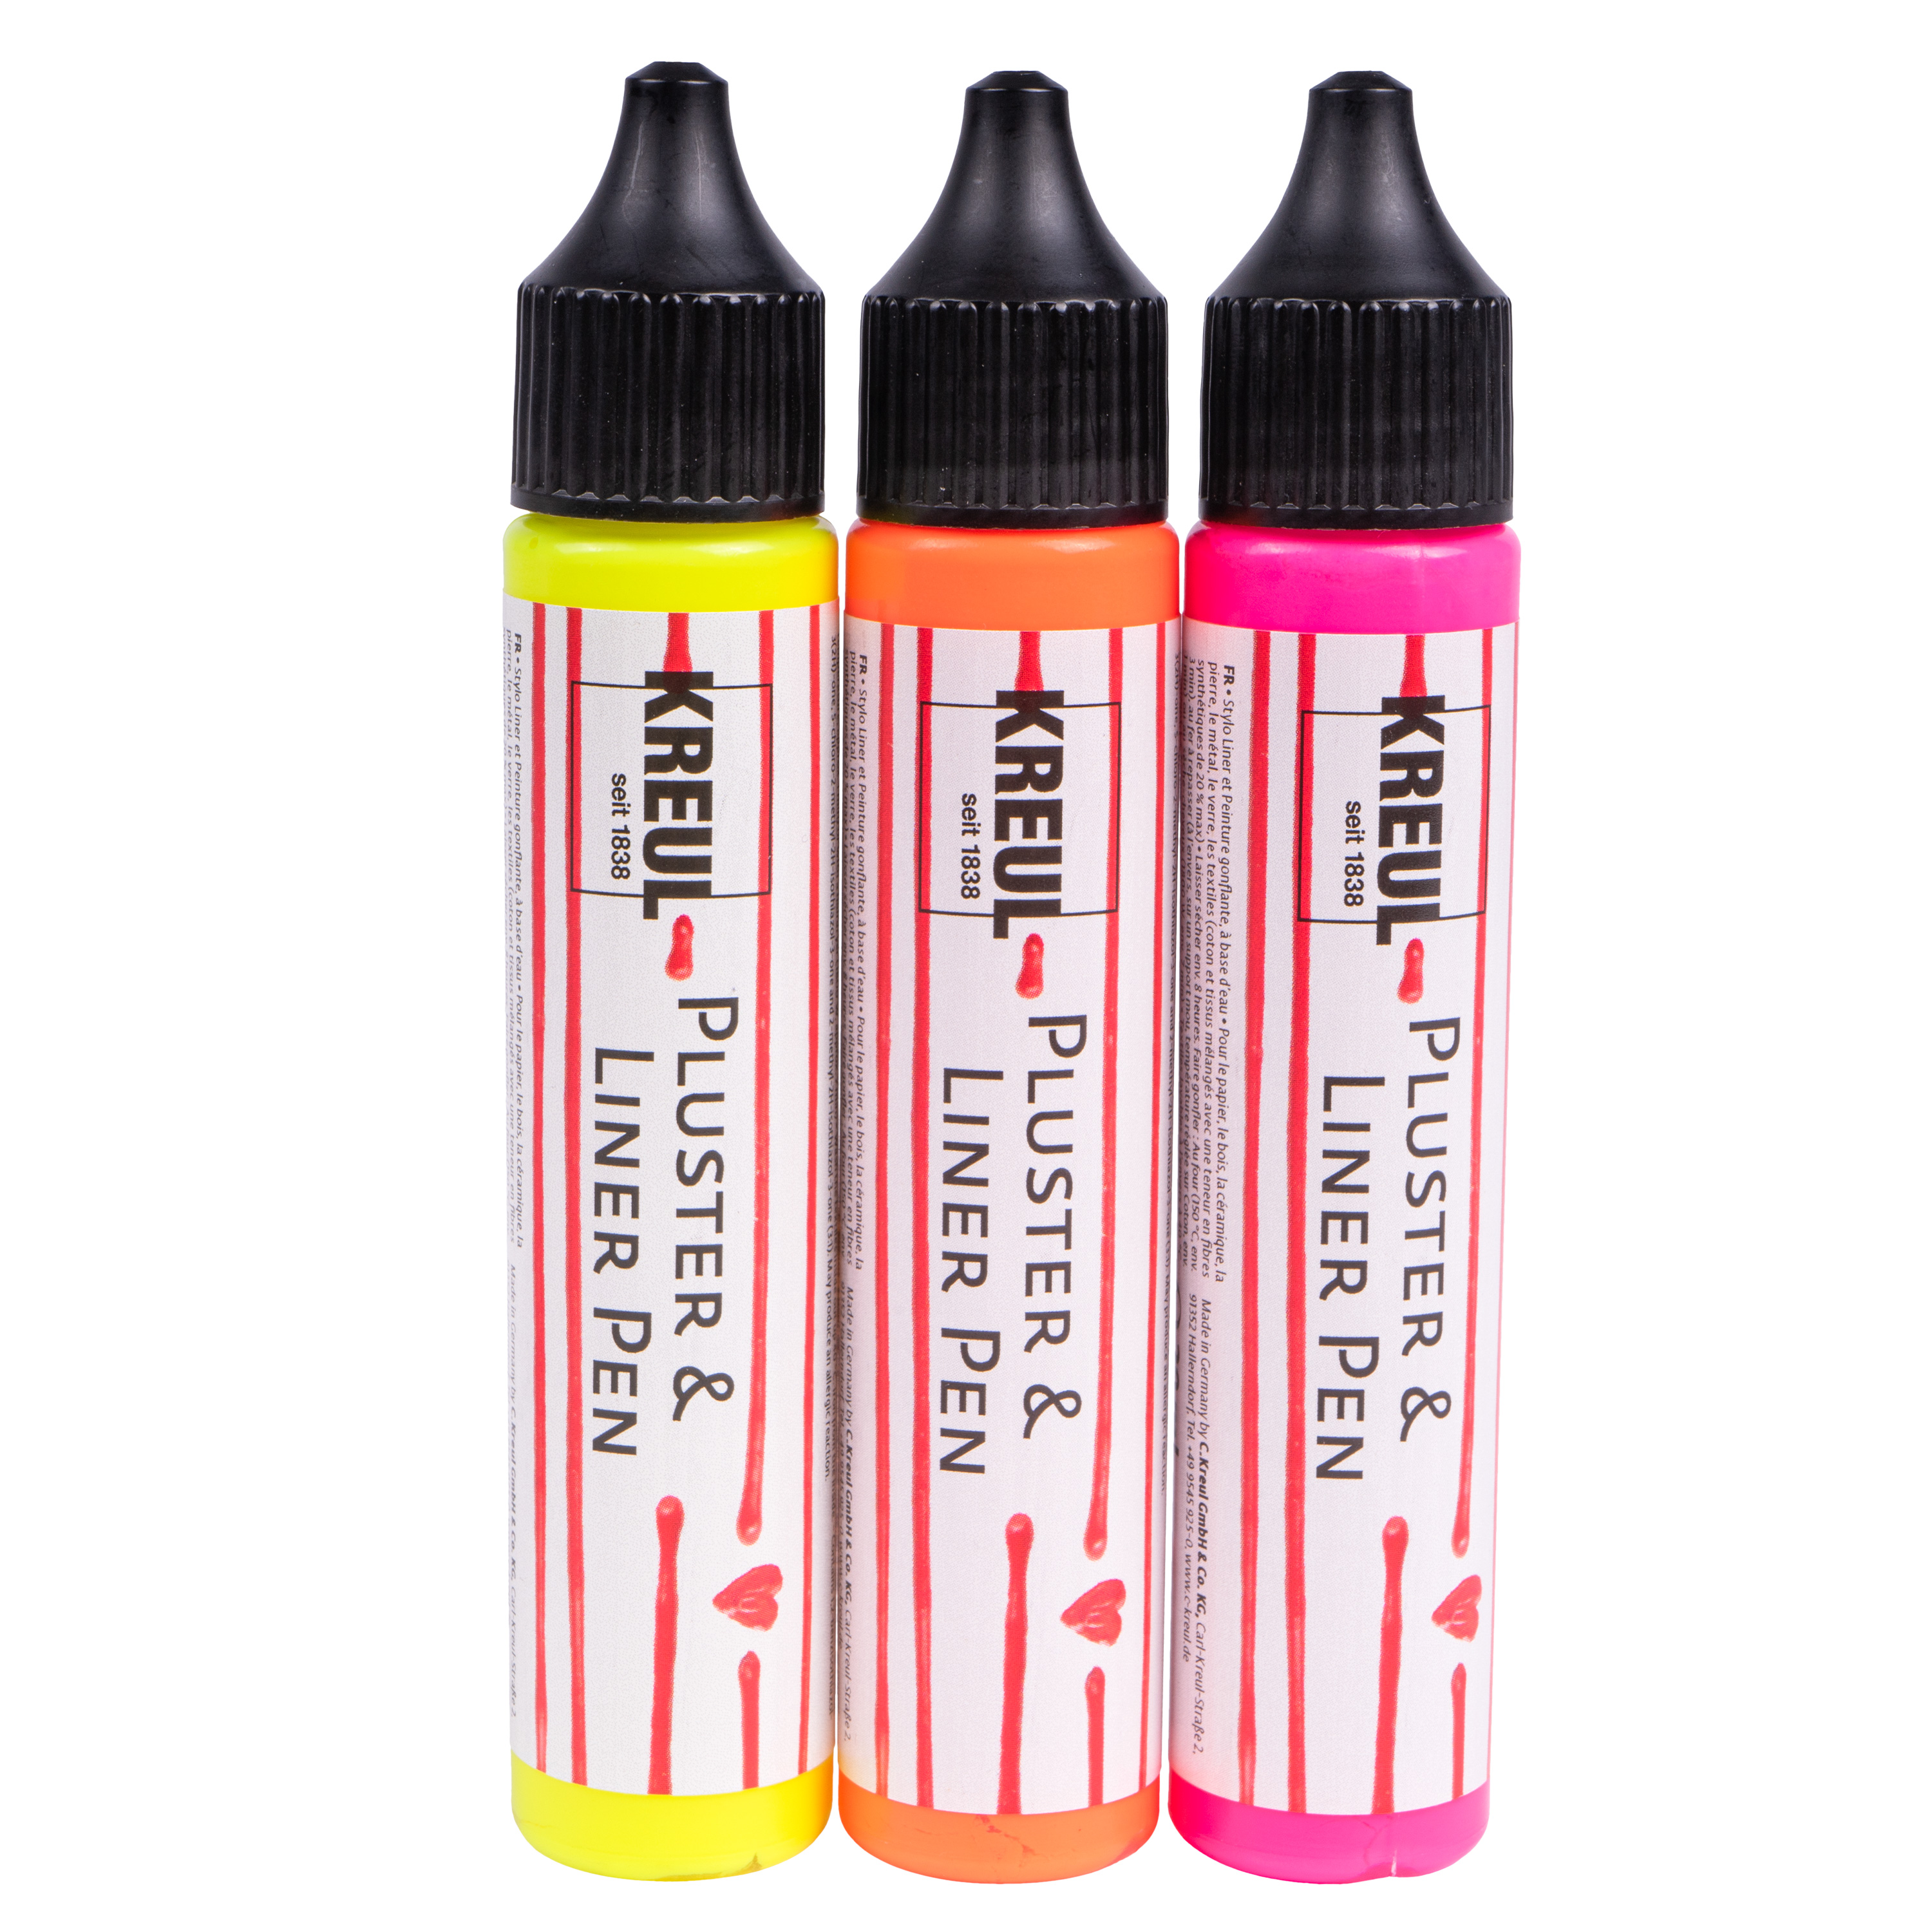 KREUL Pluster & Liner Pen, je 29 ml, 3er-Set neon